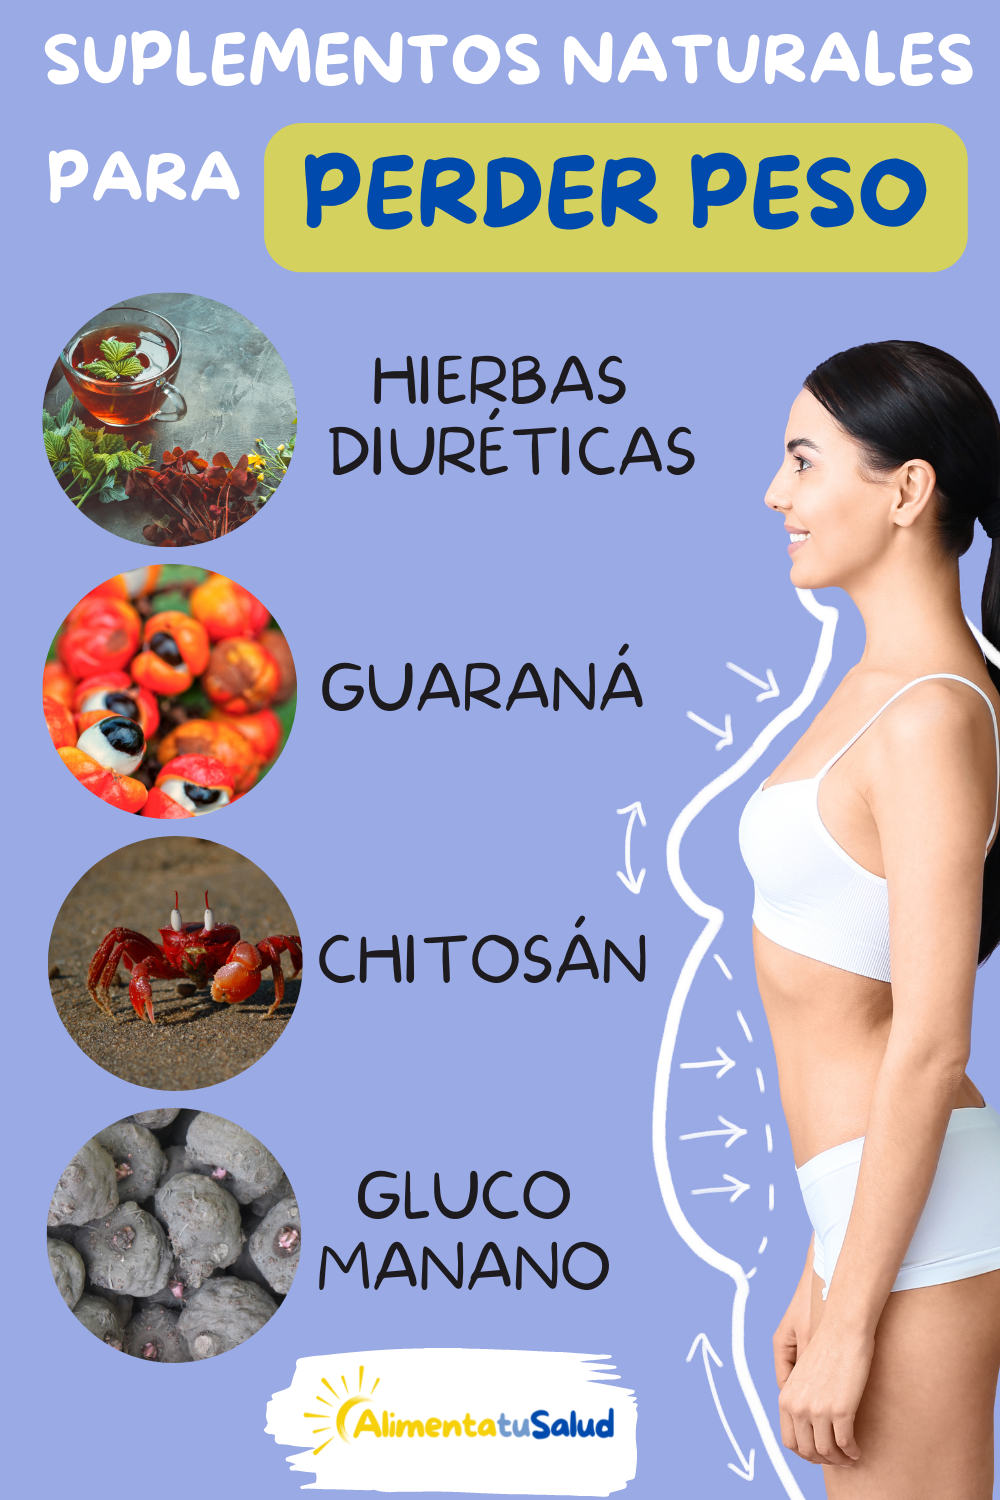 suplementos alimenticios naturales par adelgazar. Hierbas diuréticas, guaraná, chitosán, glucomanano.